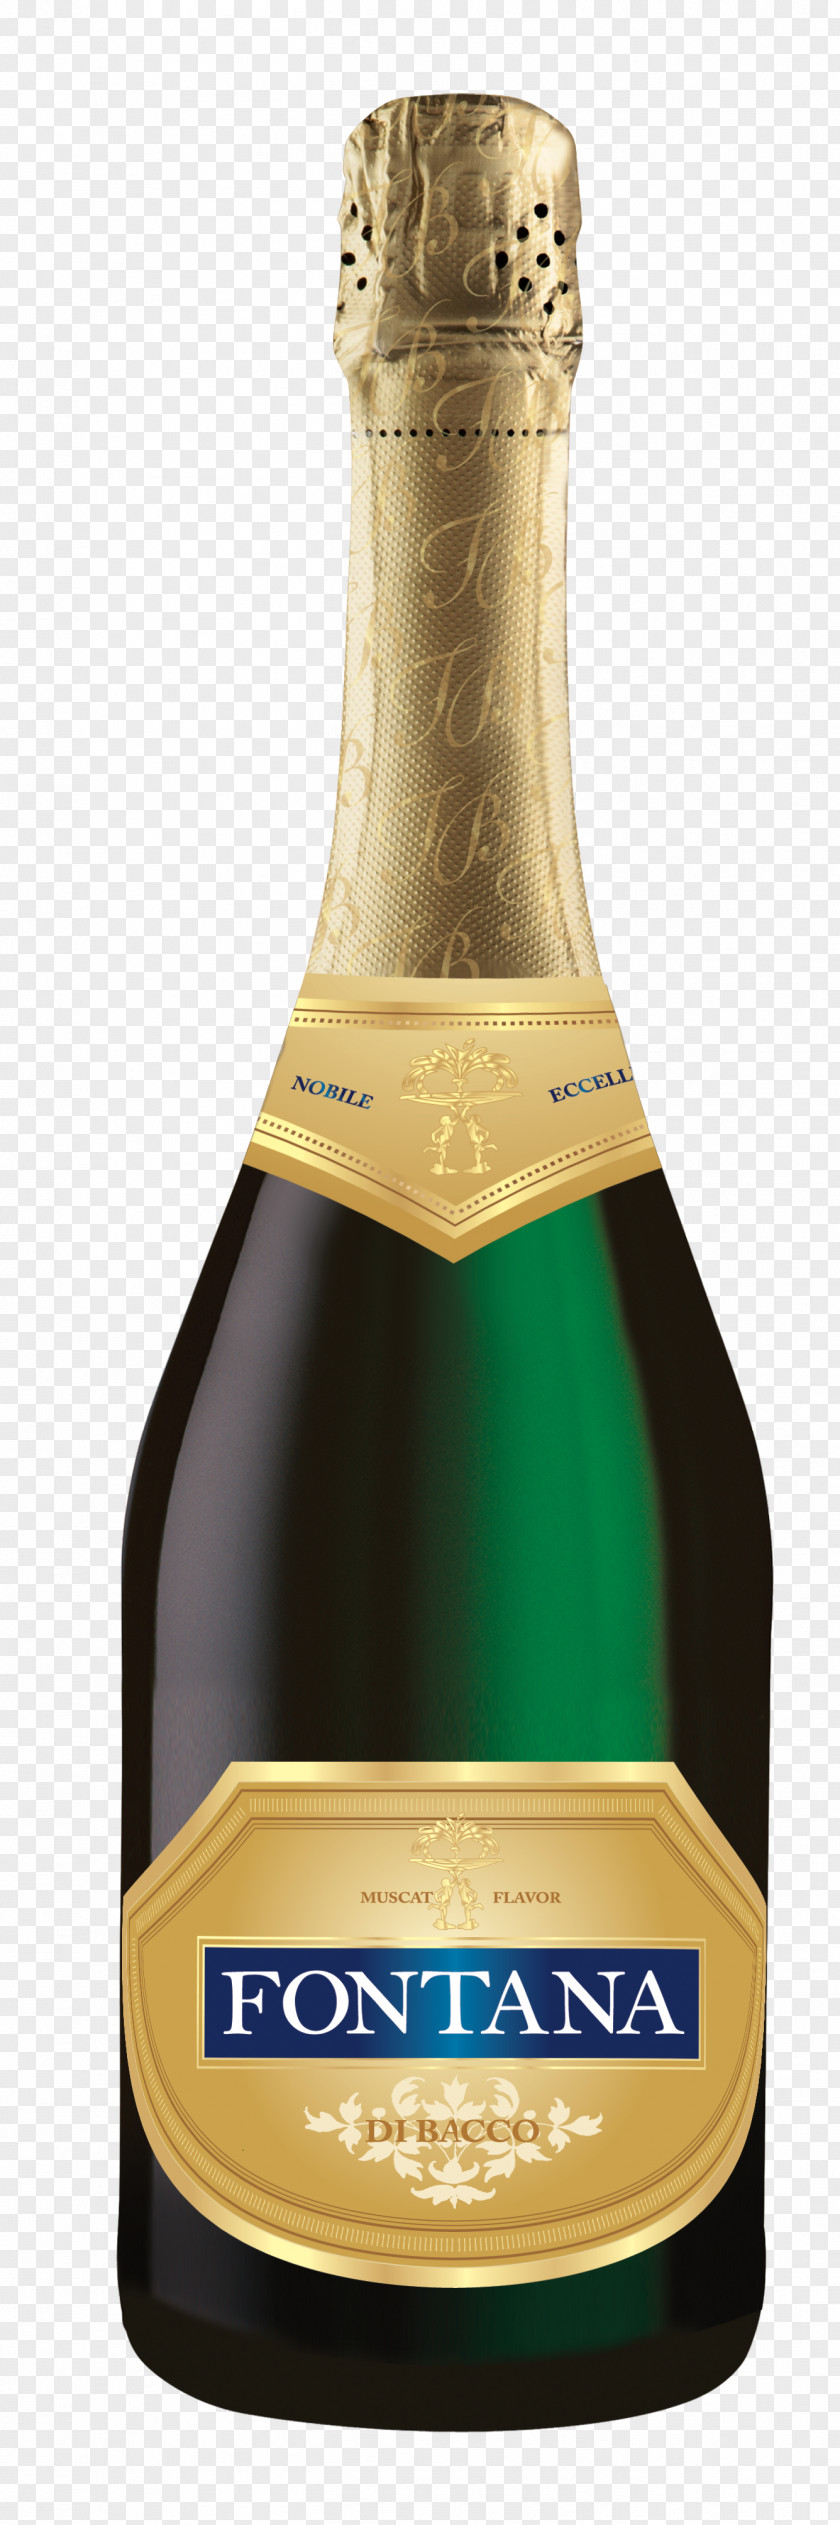 Champagne Liqueur Bottle PNG